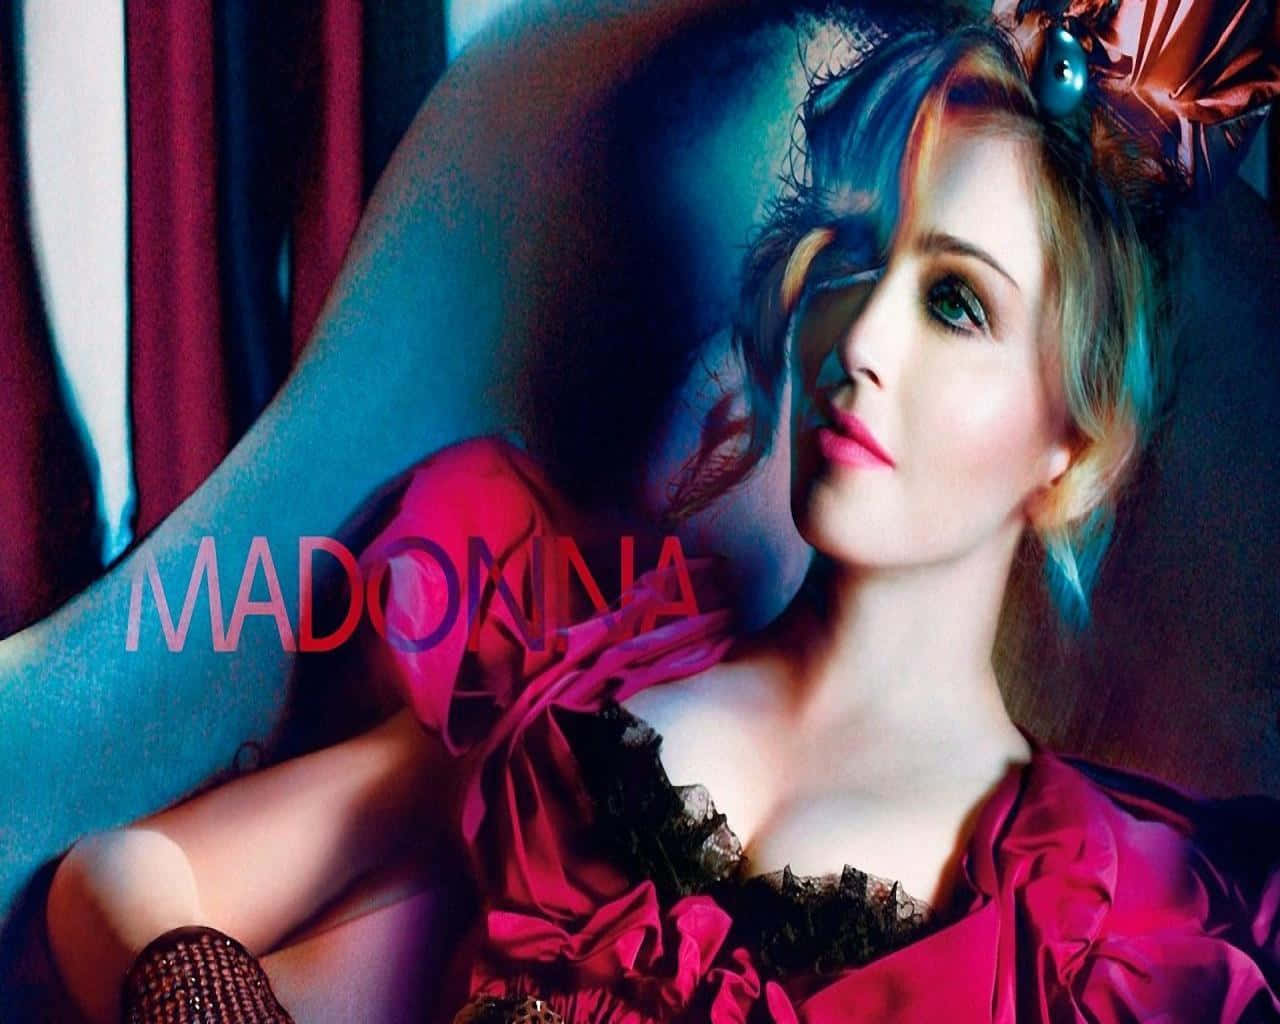 "Queen of Pop, Madonna"